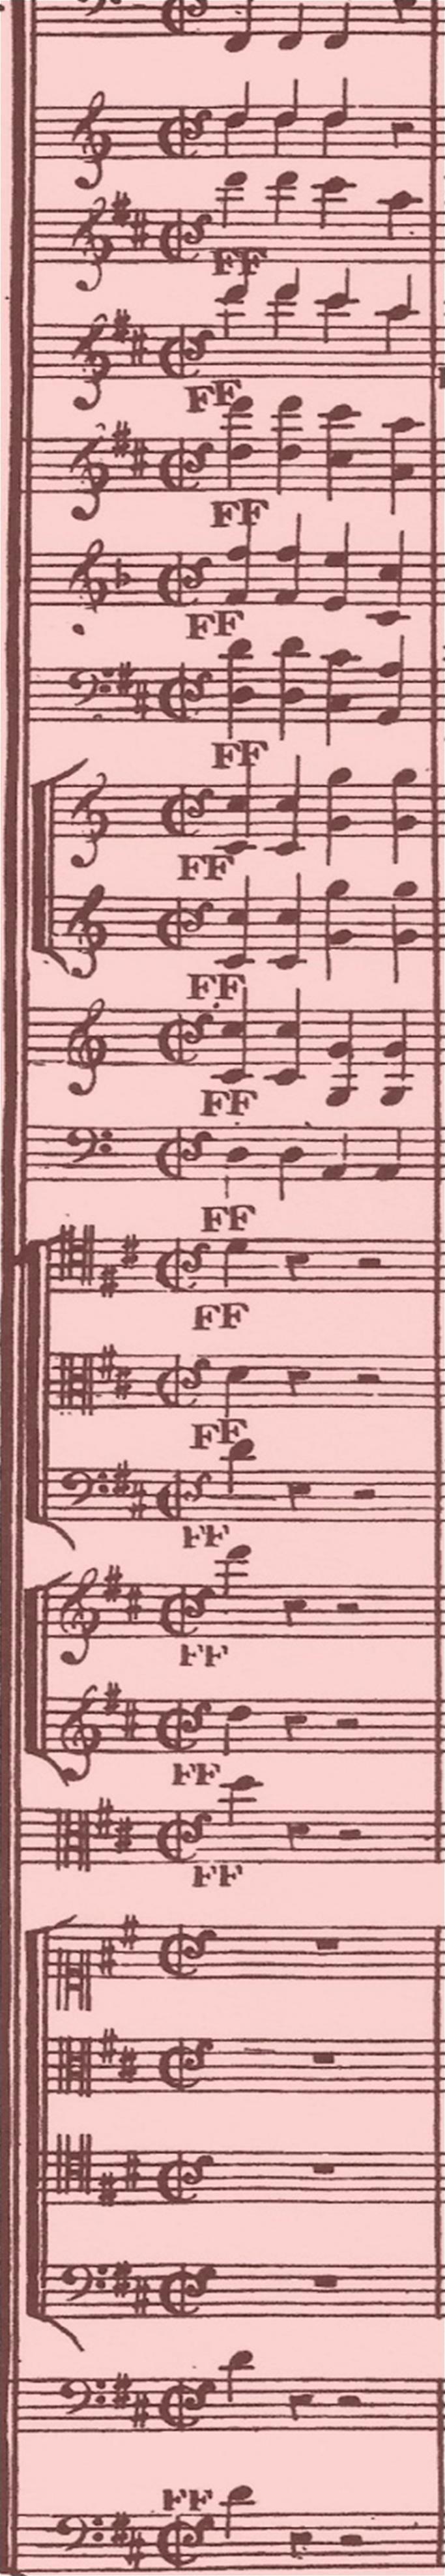 düşünülecek olursa, polifonik müziklerin yaratılabilmesi ile nota yazısını tasarım aracı olarak kullanabilme arasındaki sıkı bağıntı